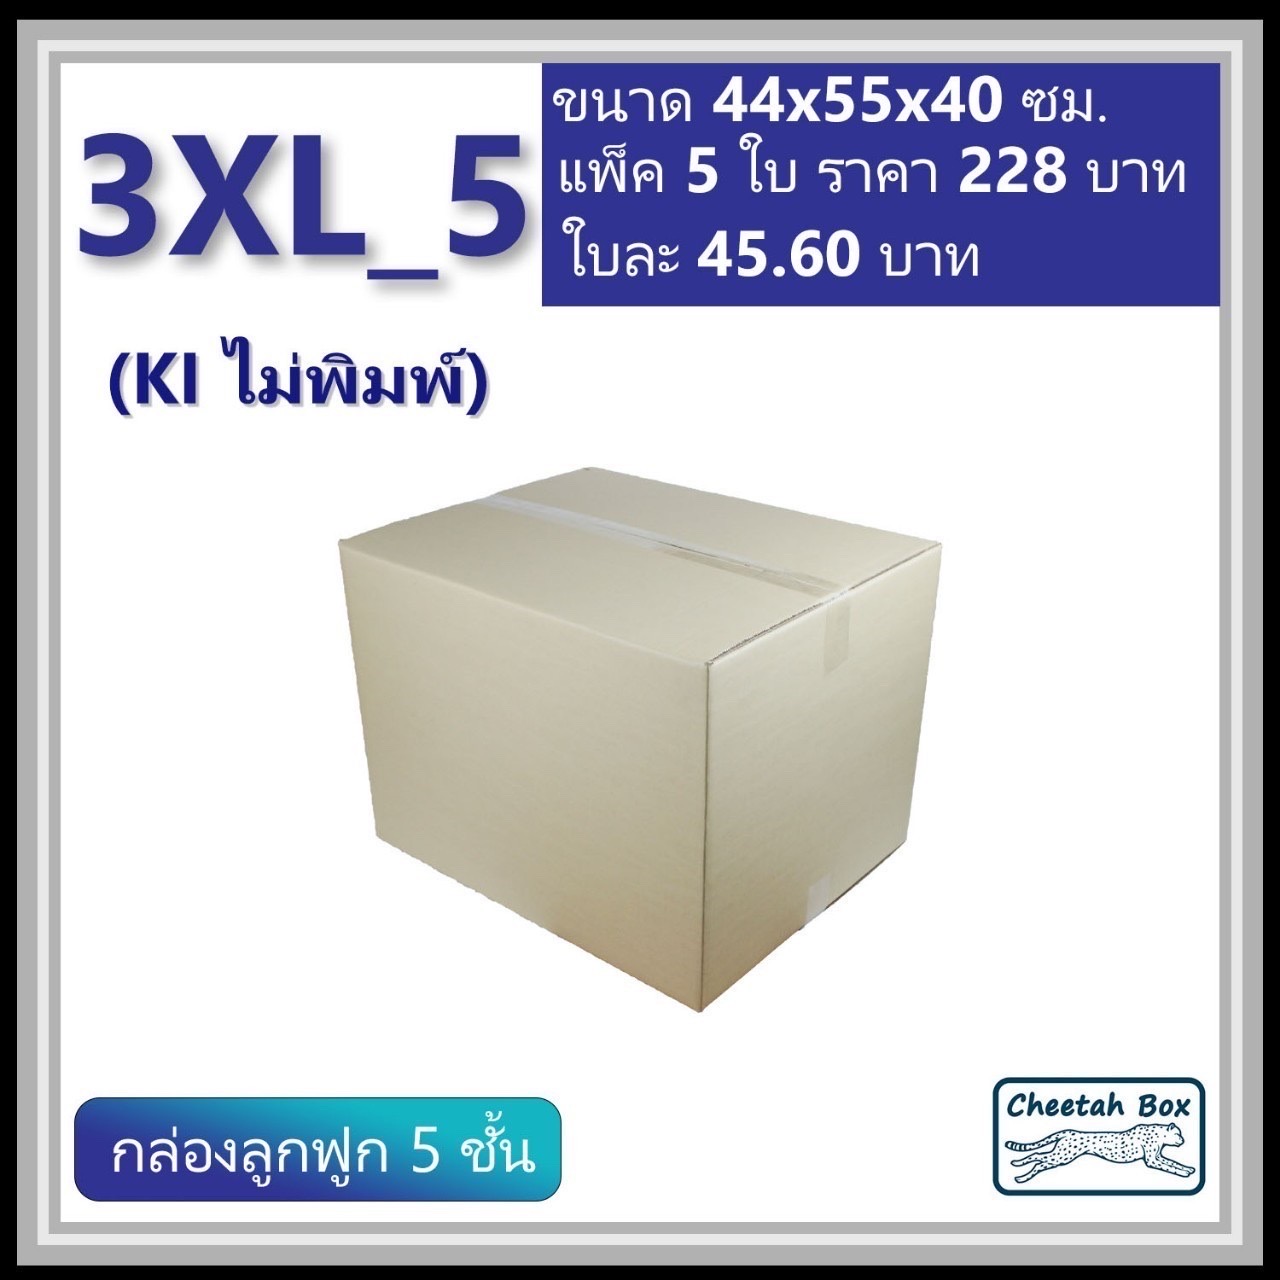 กล่องพัสดุ 3XL_5 (KI 5 ชั้น) ไม่พิมพ์ (Post Box) ลูกฟูก 5 ชั้น ขนาด 44W x 55L x 40H cm.